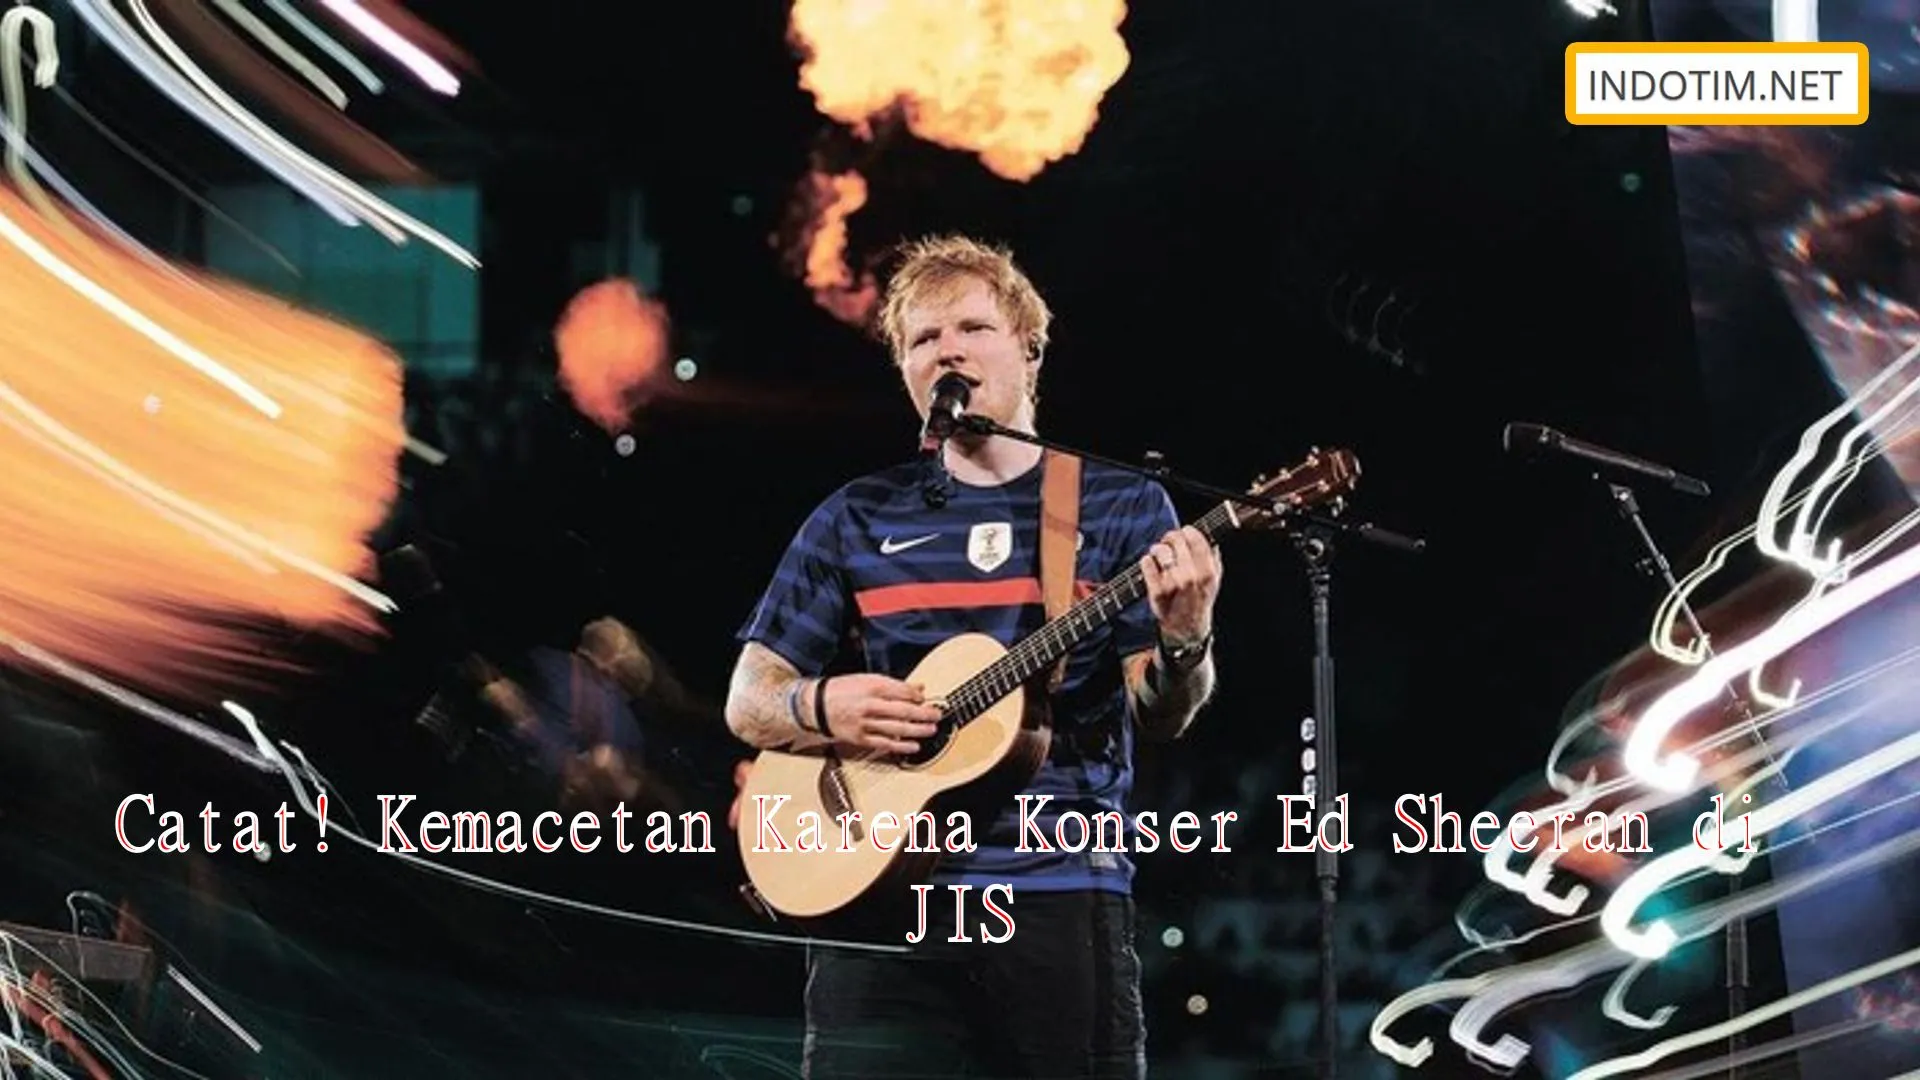 Catat! Kemacetan Karena Konser Ed Sheeran di JIS